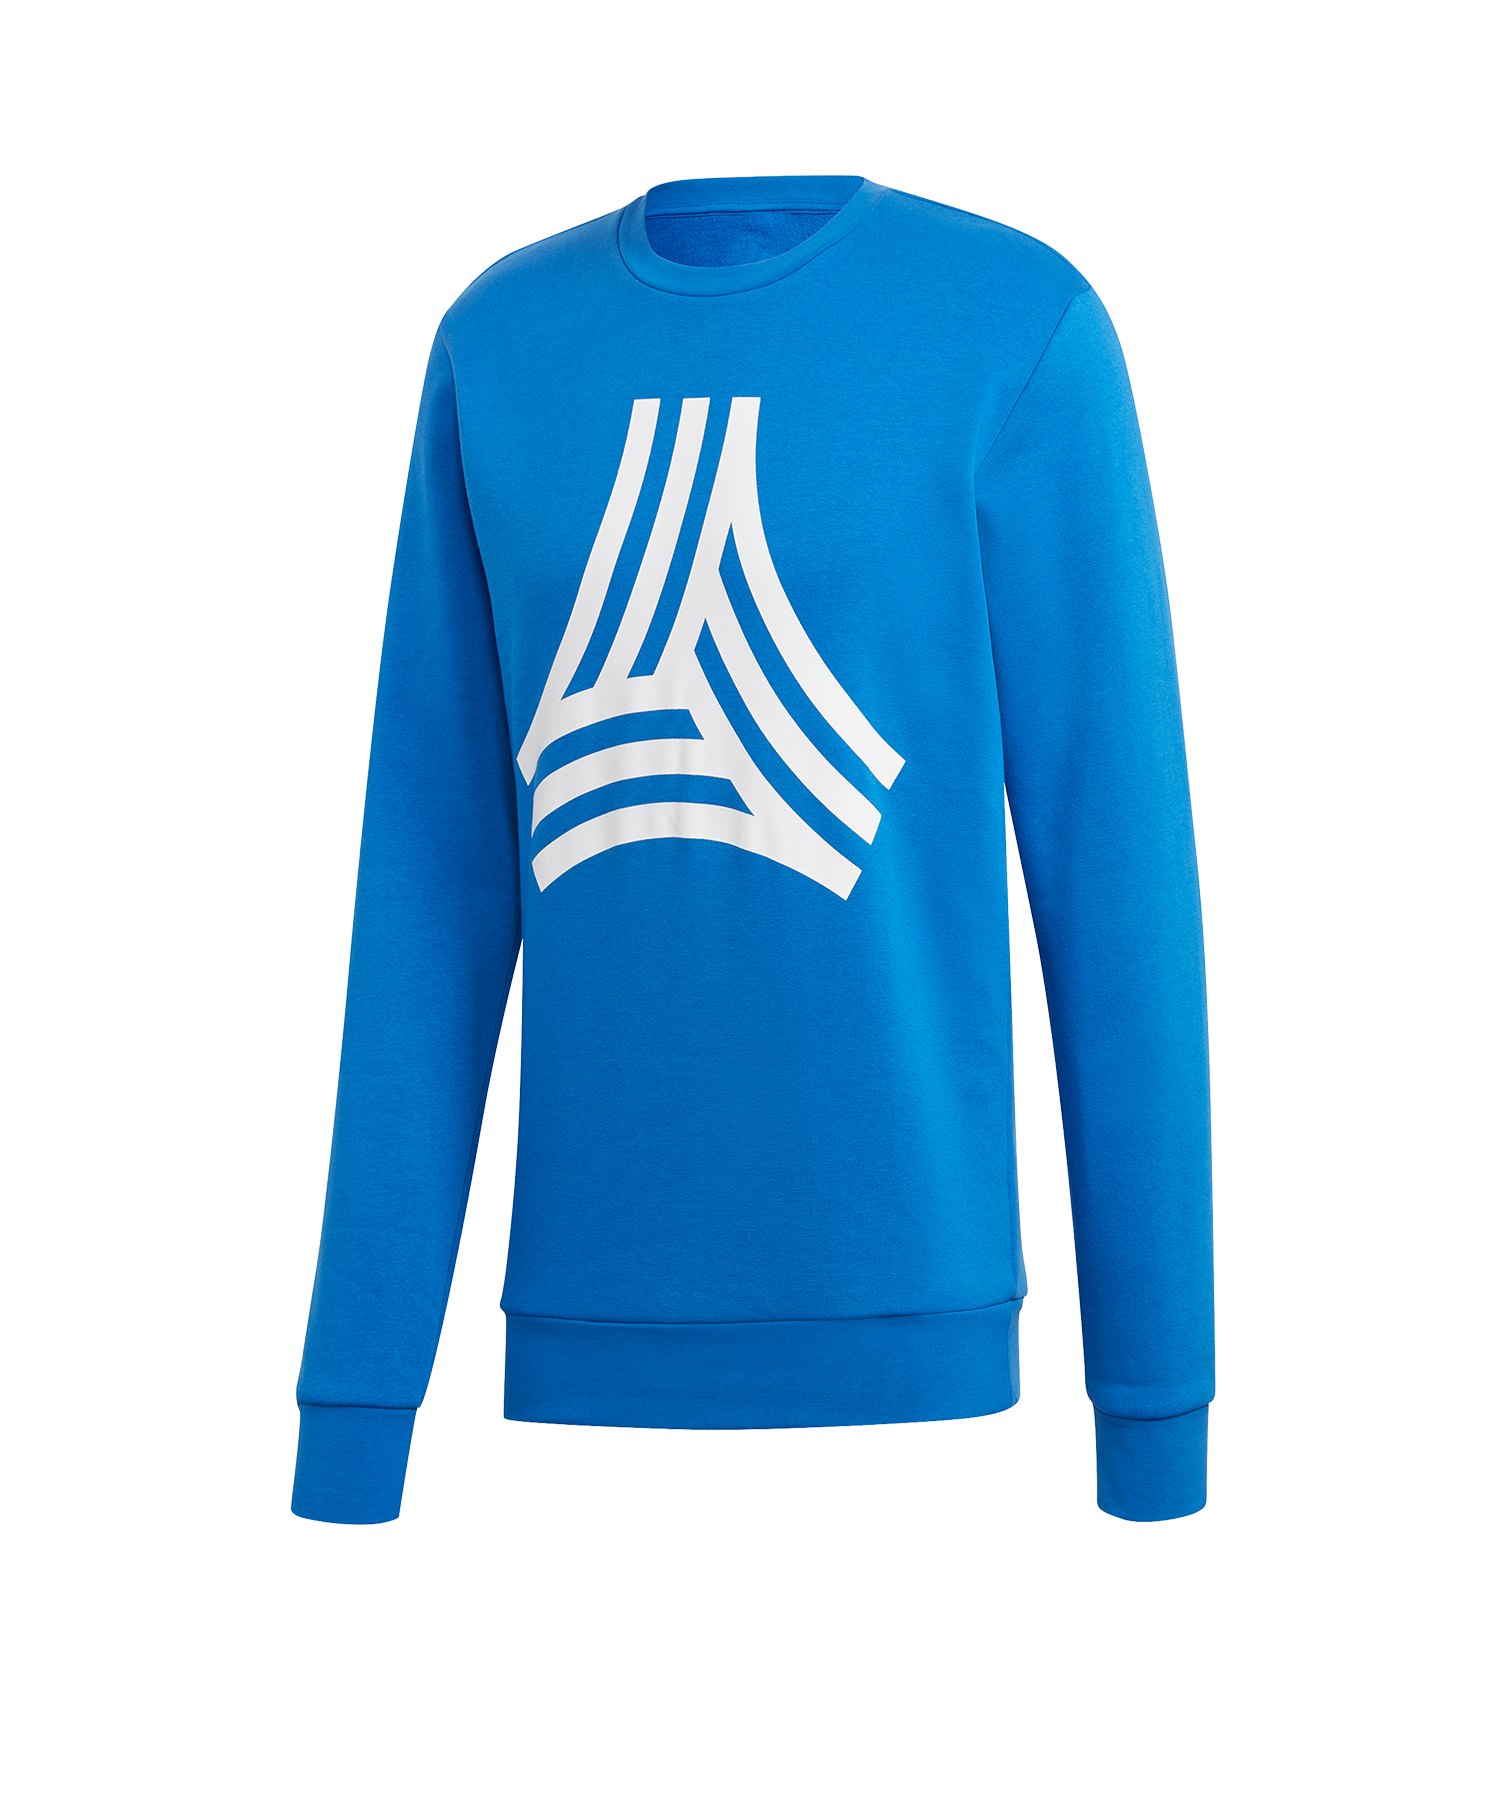 adidas Tango Graphic Sweatshirt Blau - blau